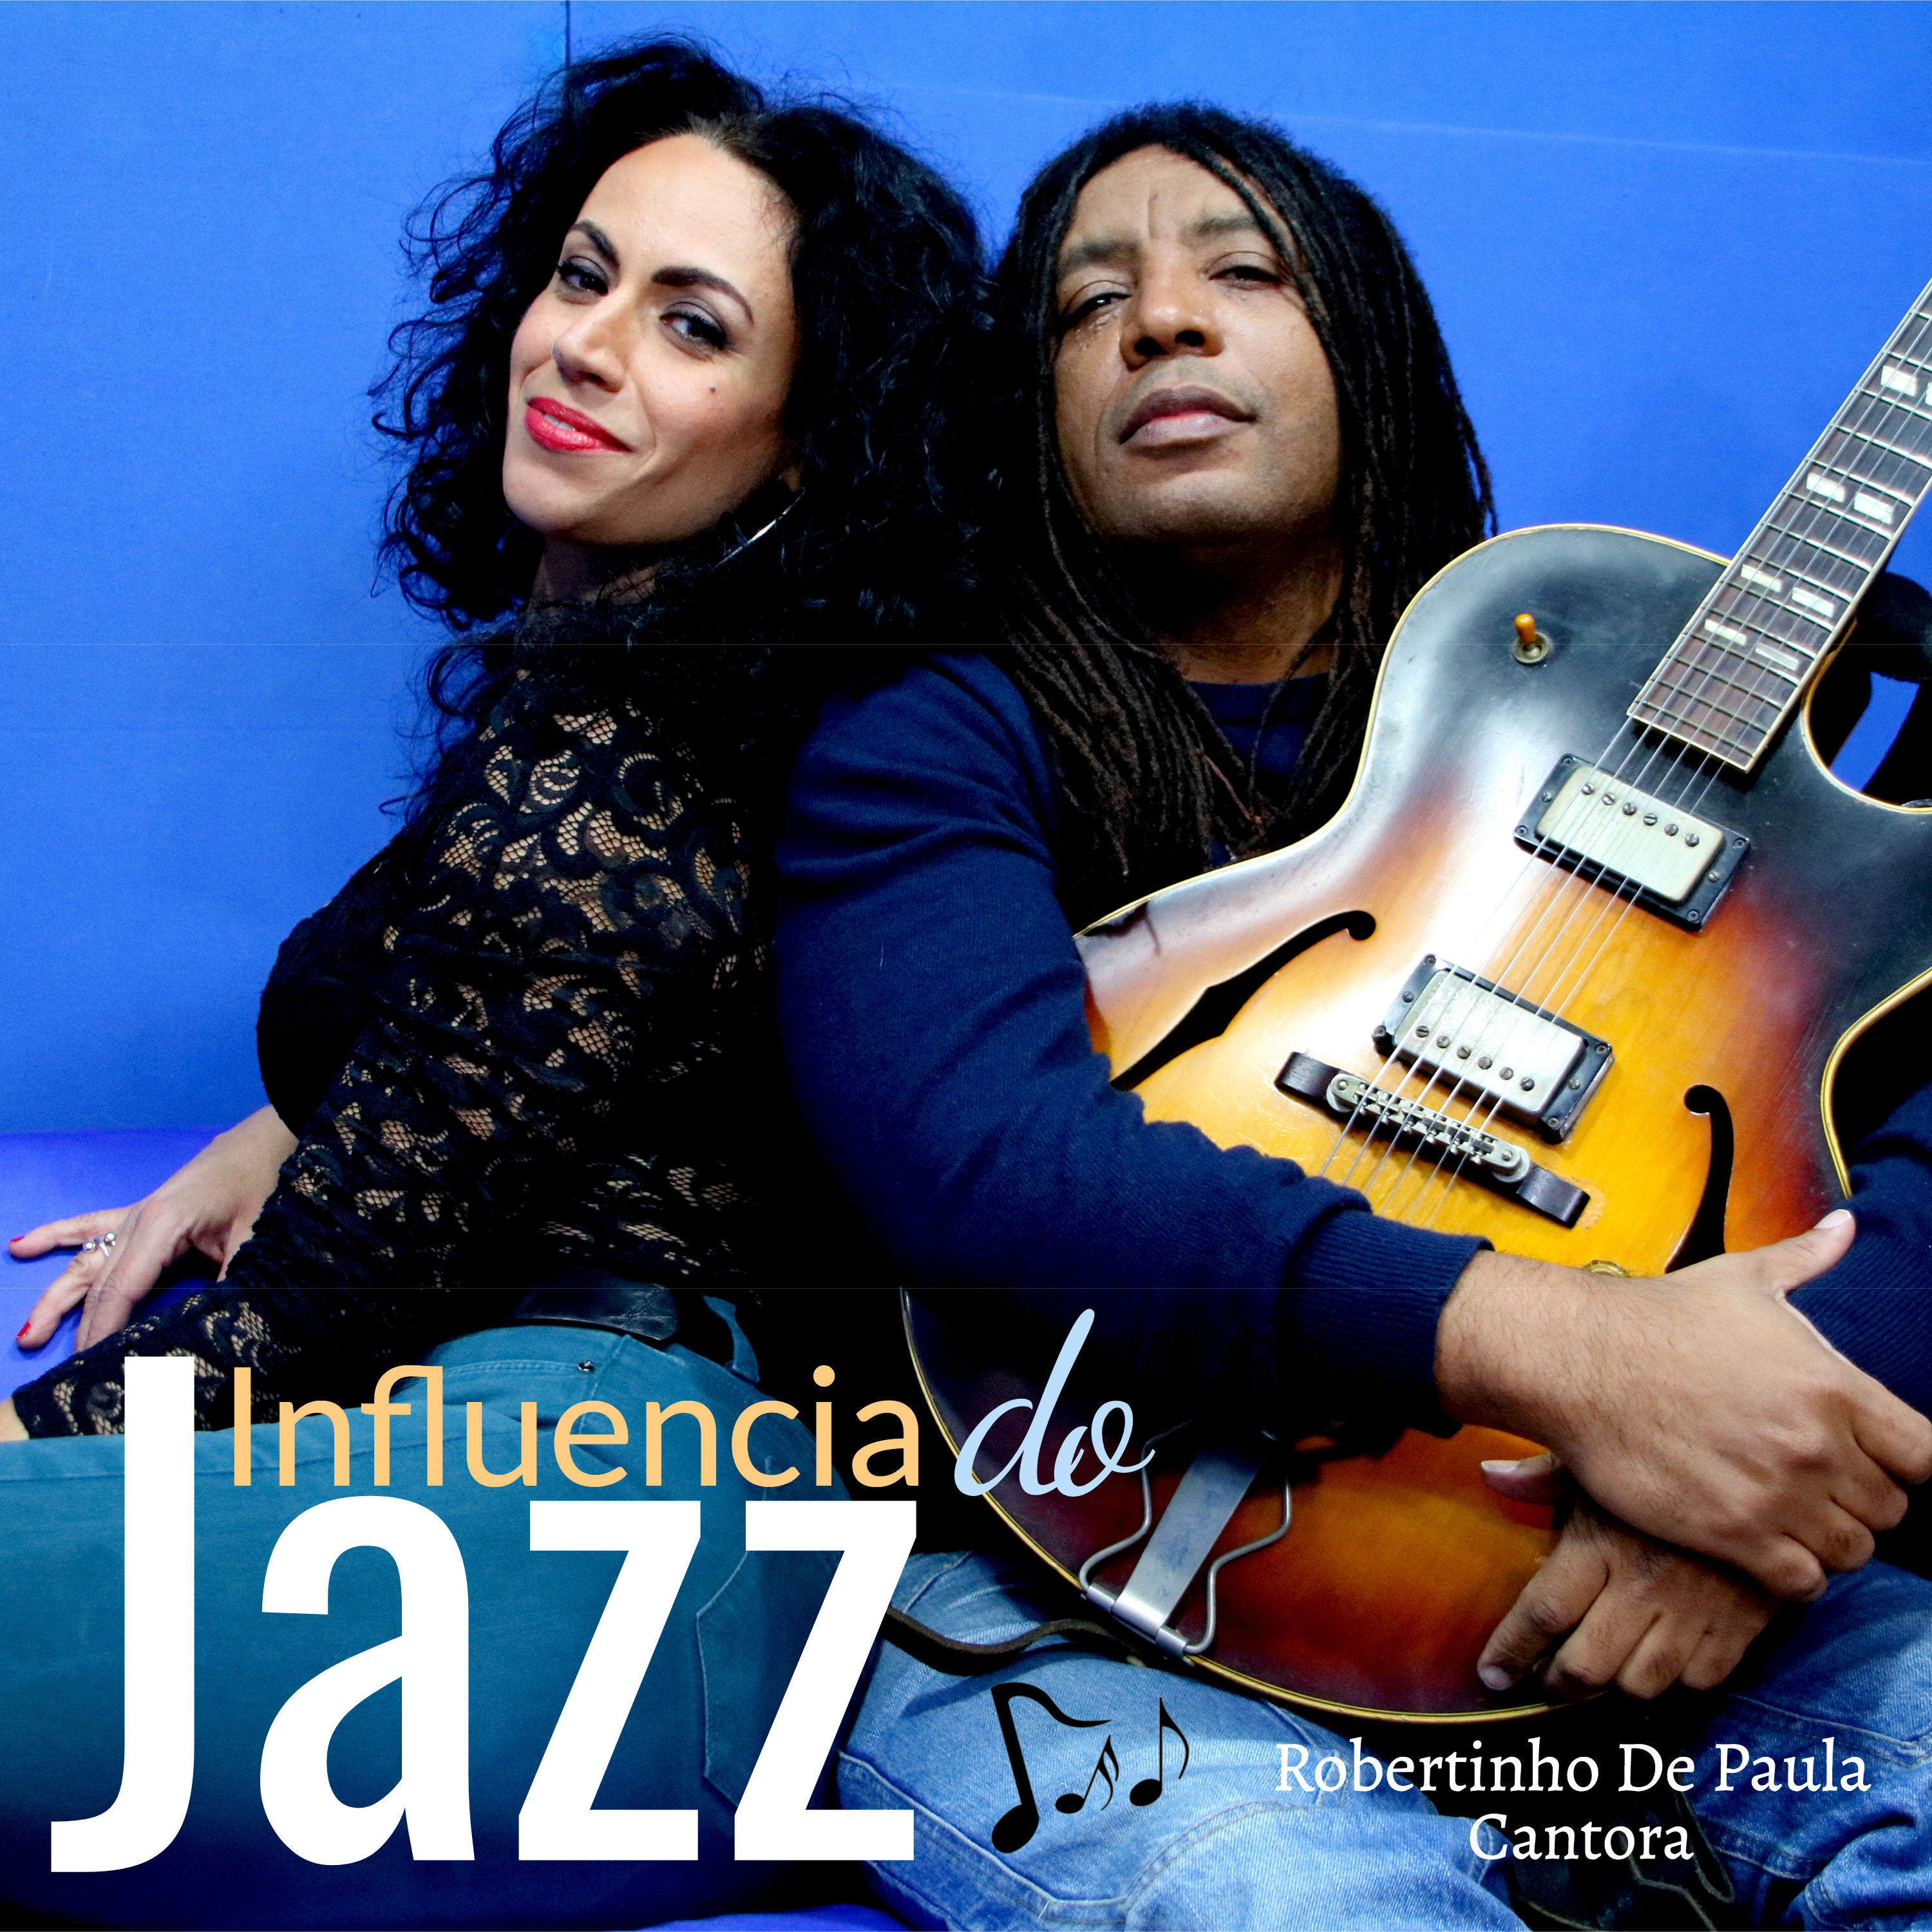 Robertinho De Paula - Influencia do jazz (2020) [FLAC 24bit/96kHz]